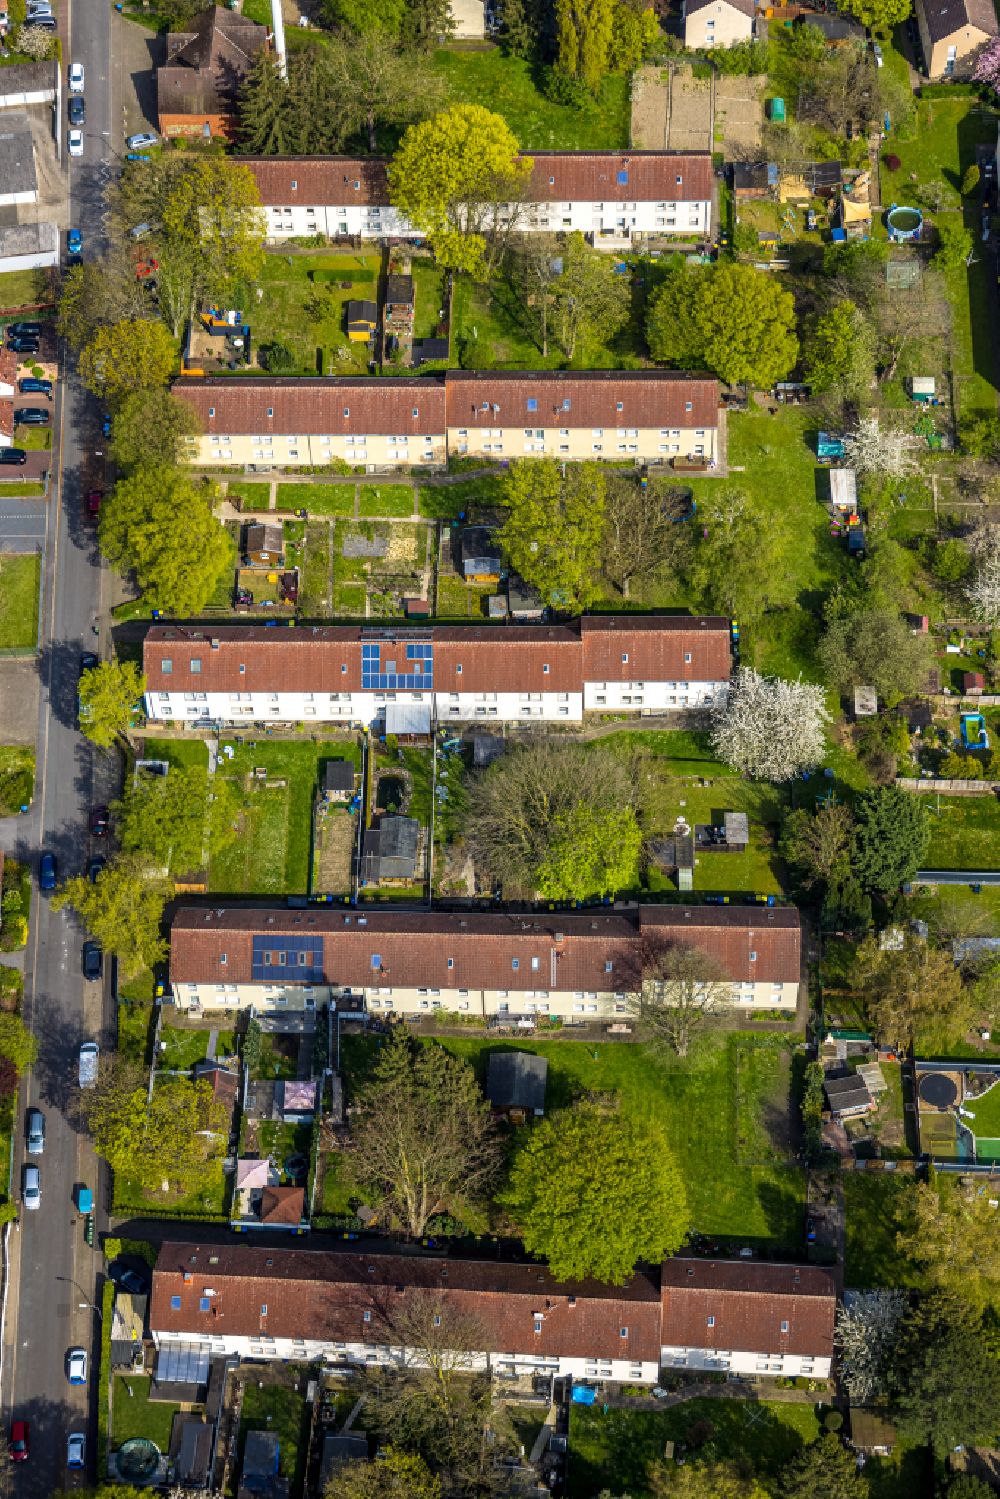 Luftbild Bönen - Wohngebiet der Mehrfamilienhaussiedlung entlang der Woortstraße - Rosenstraße in Bönen im Bundesland Nordrhein-Westfalen, Deutschland